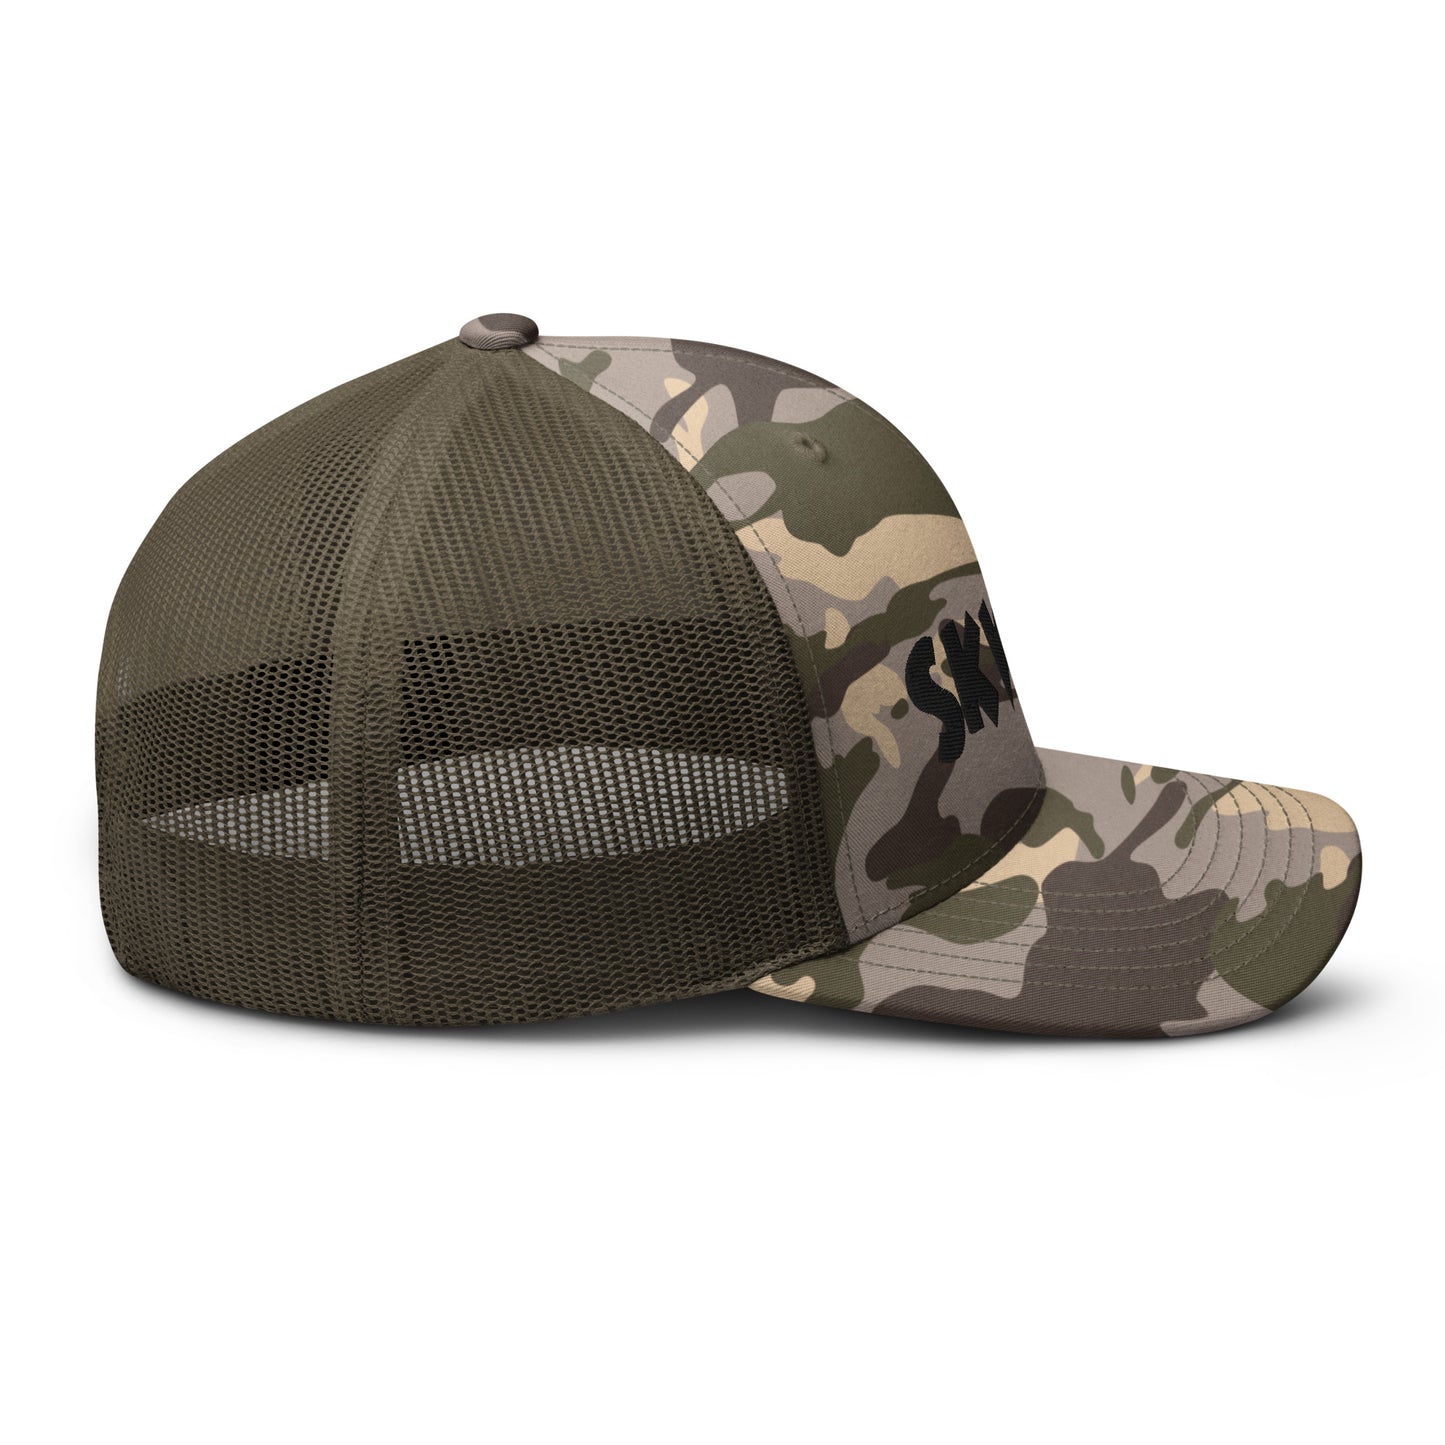 Skwok Brand / Hat / Traditional / OG Logo / 3D Puff / Camouflage / Black